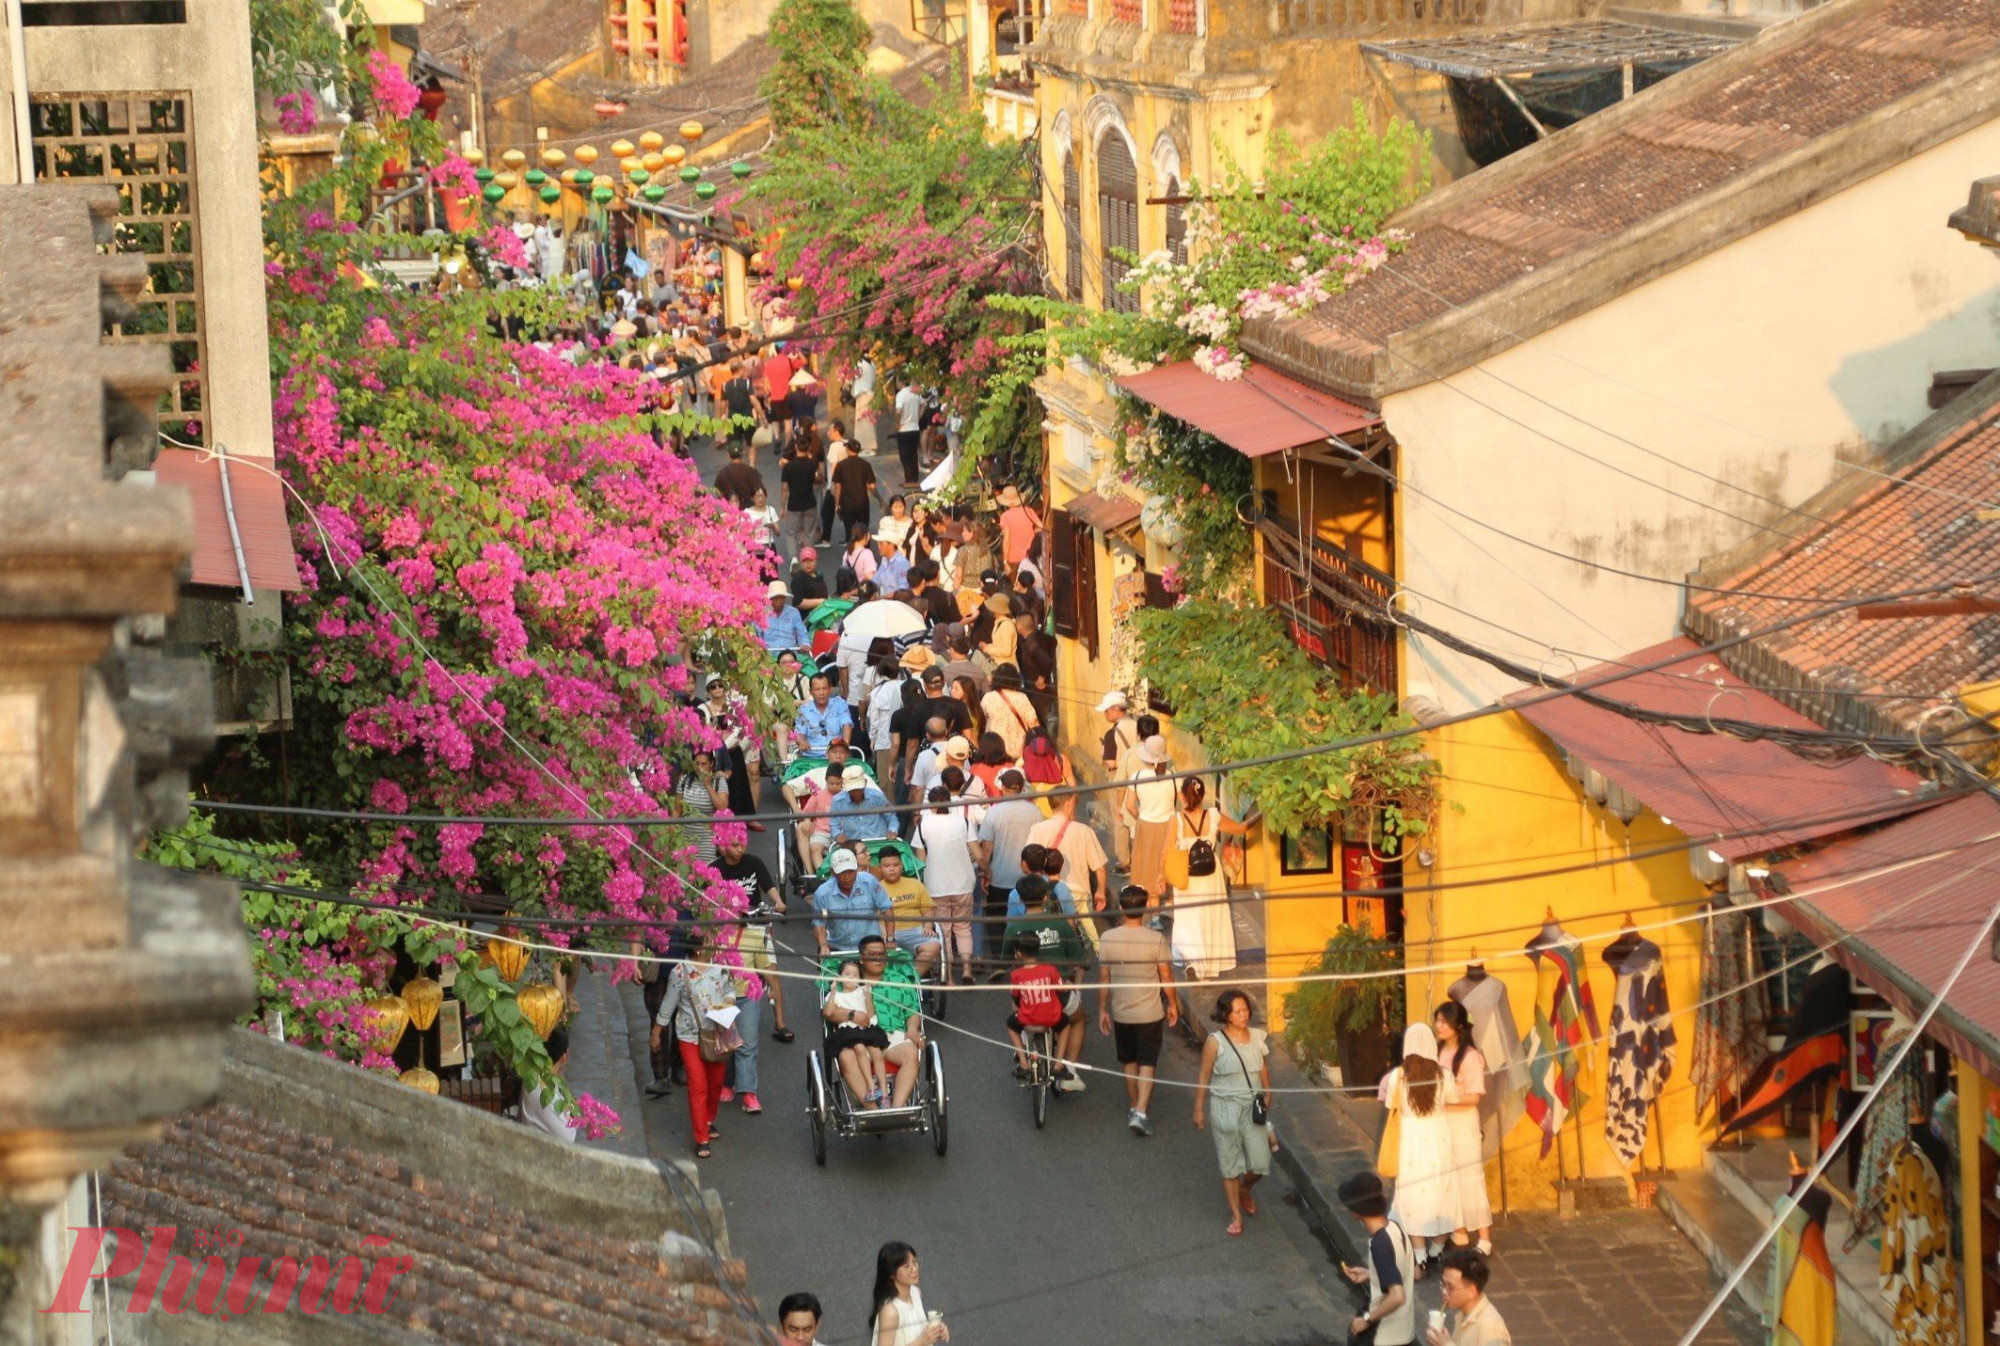 Đây là con đường trung tâm của phố cổ Hội An thu hút nhiều khách du lịch bởi vẻ đẹp rất riêng.